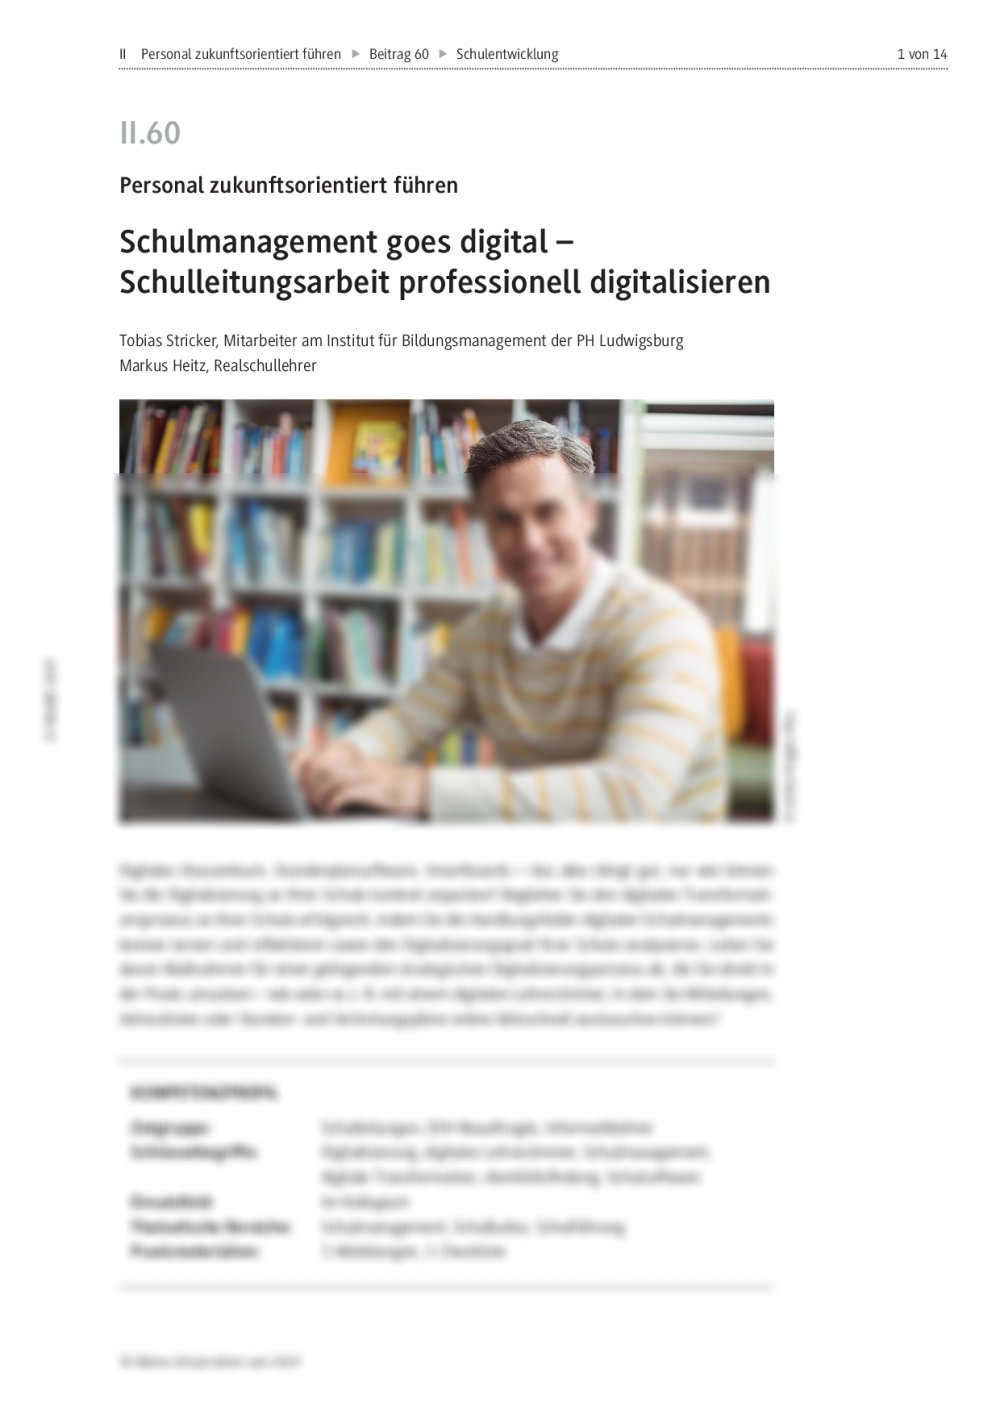 Schulmanagement goes digital - Seite 1